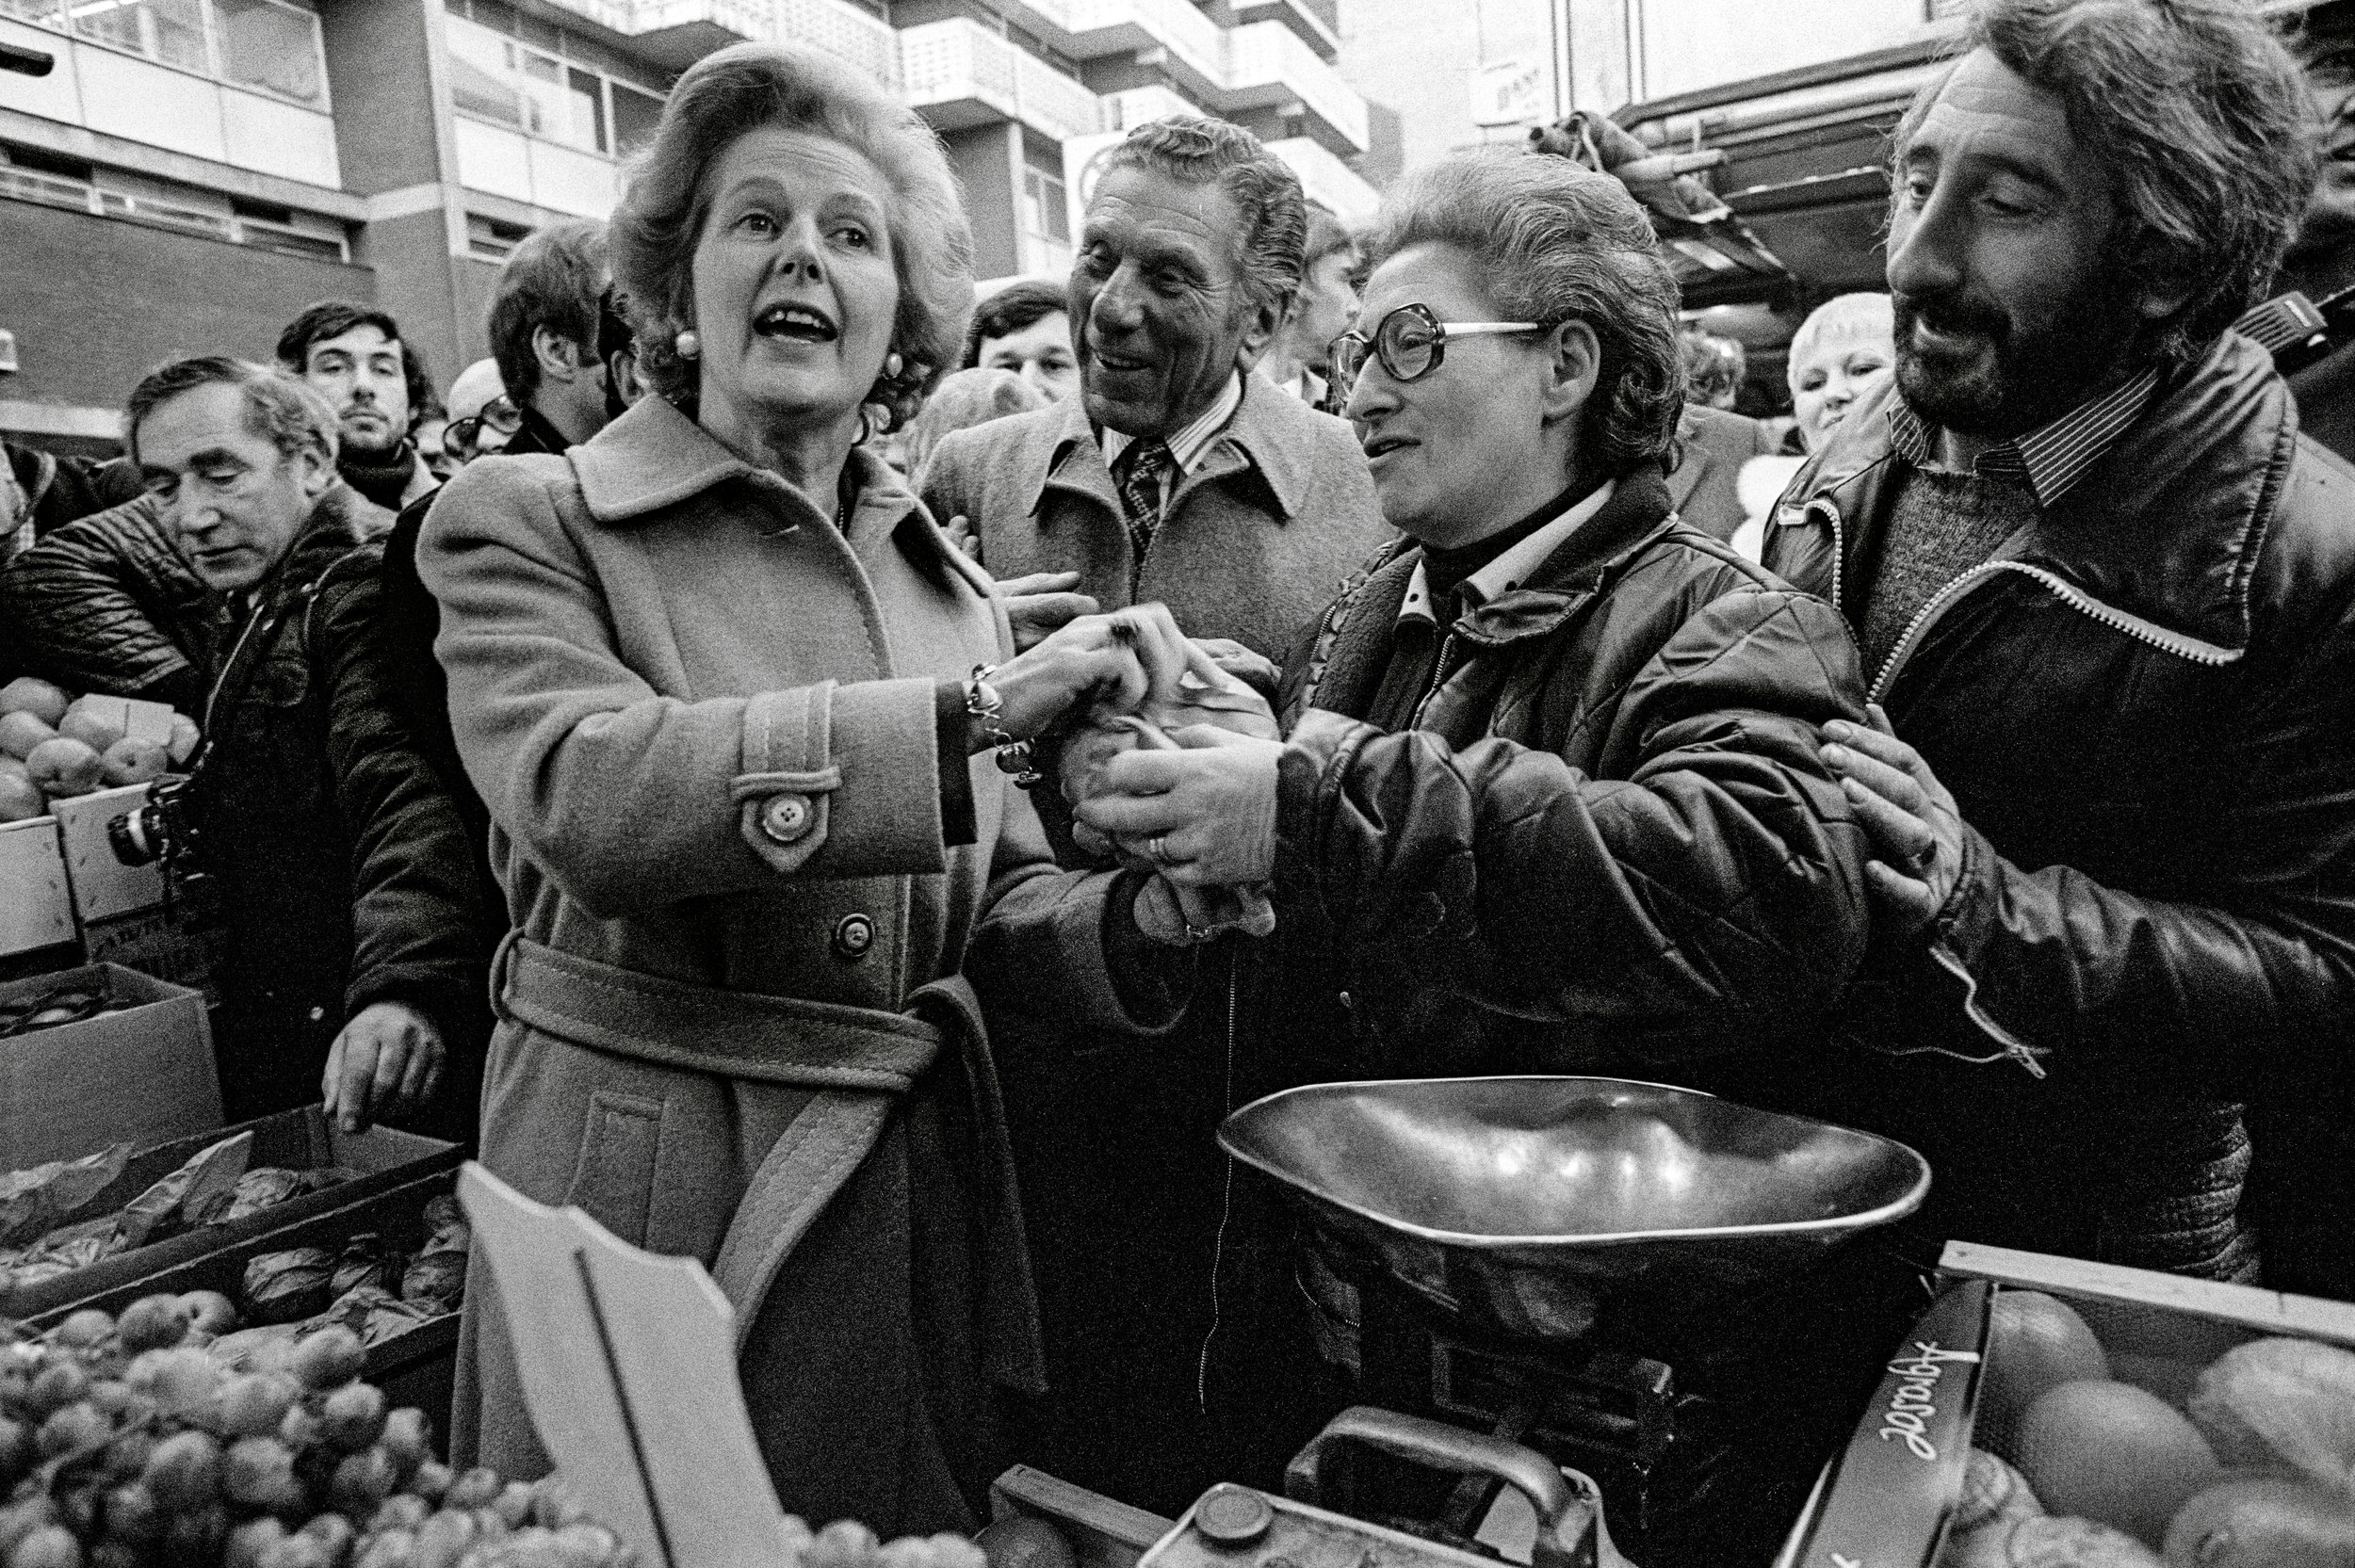 Prime Minister Margaret Thatcher visits Brixton Market, 1978